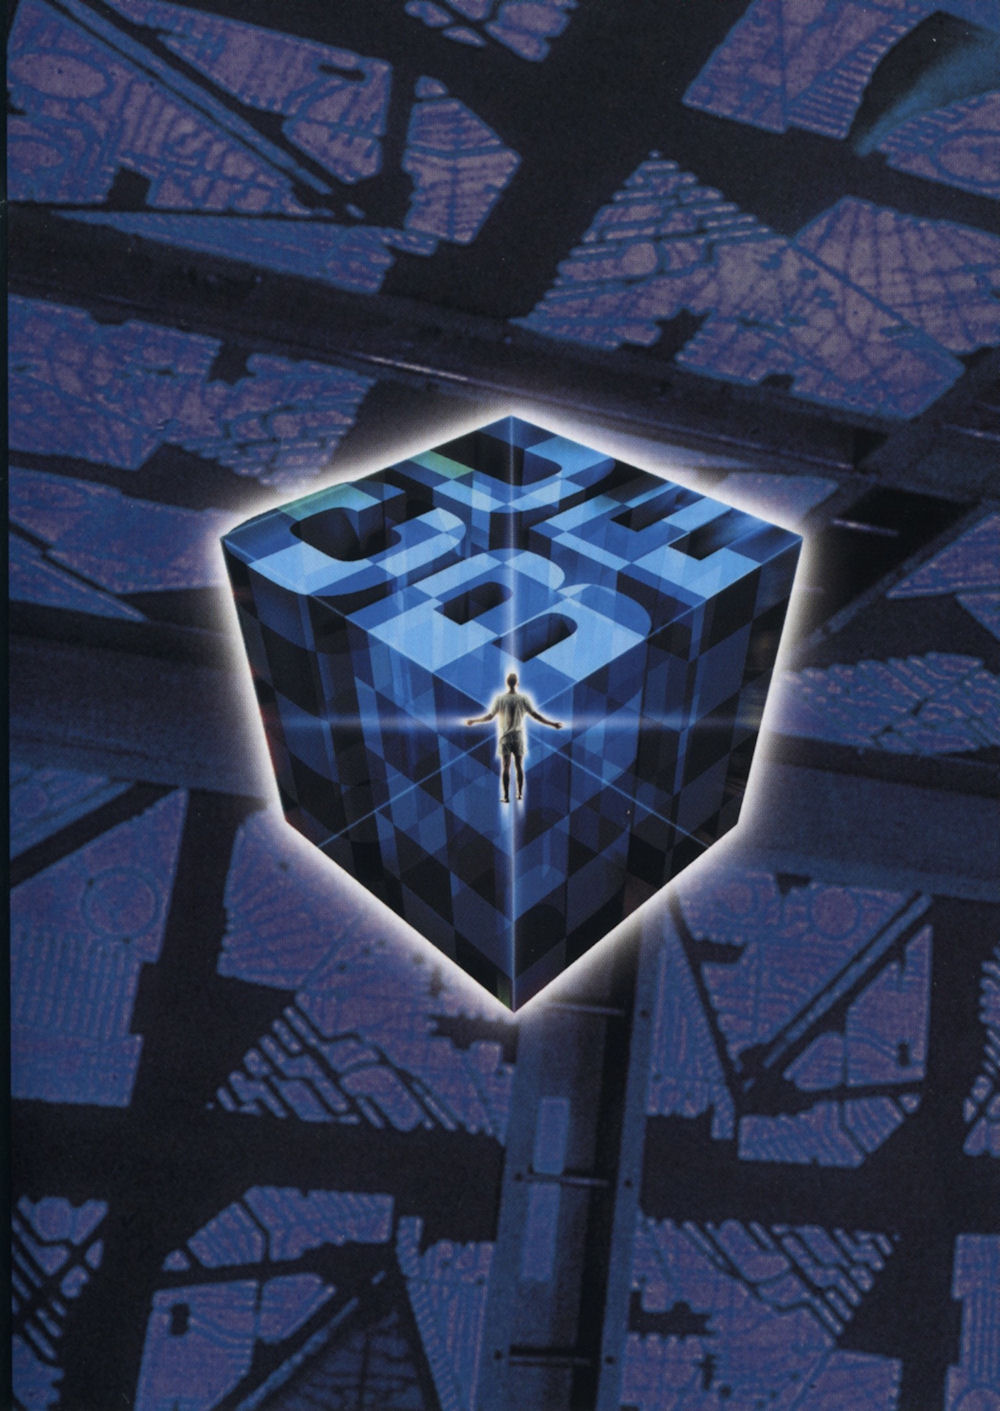 Cube - DVD Cover - Inner 2
Keywords: media_cover;cube_media